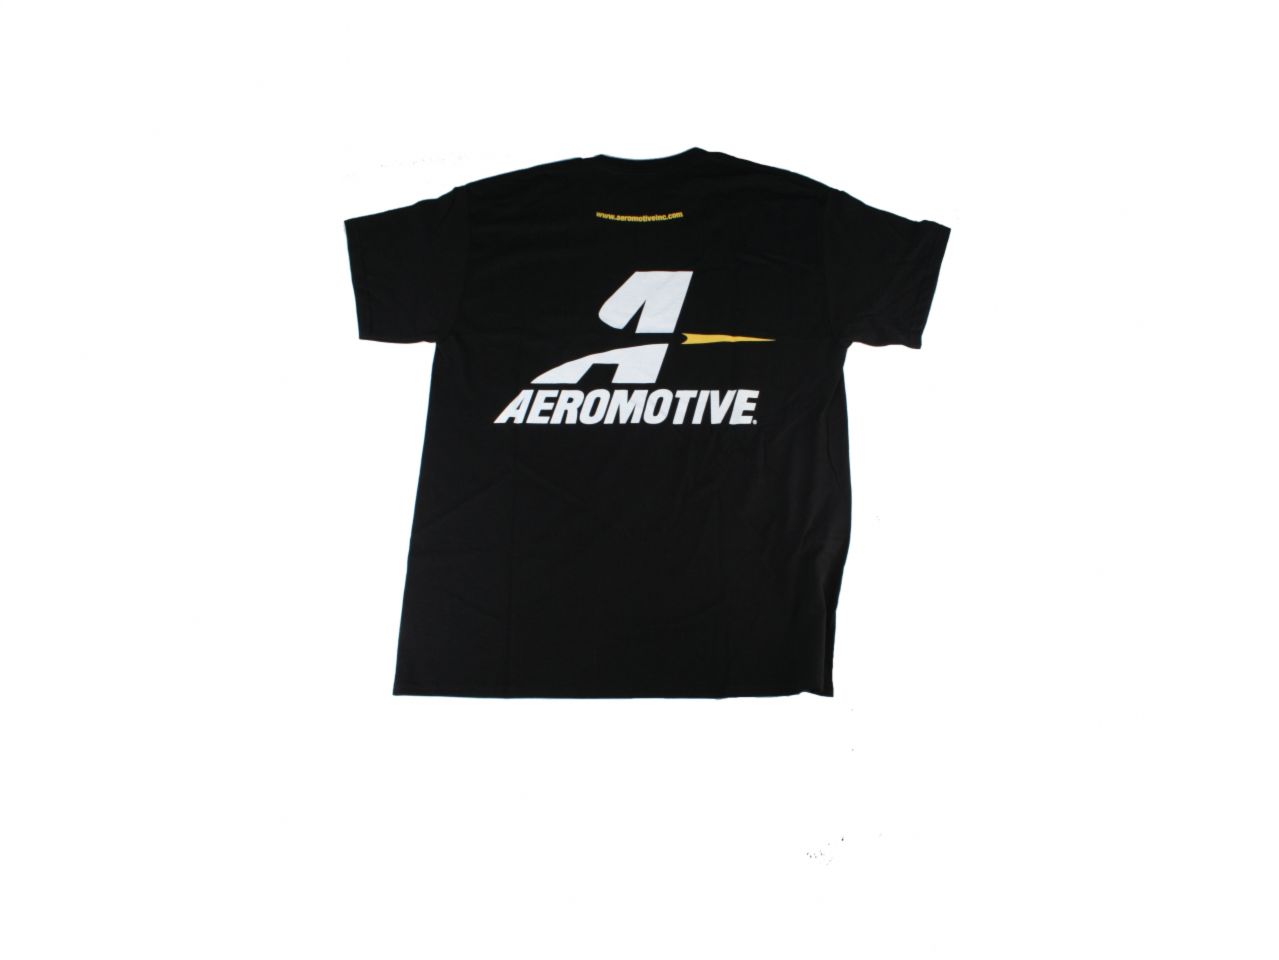 Aeromotive Shirts 91015 Item Image